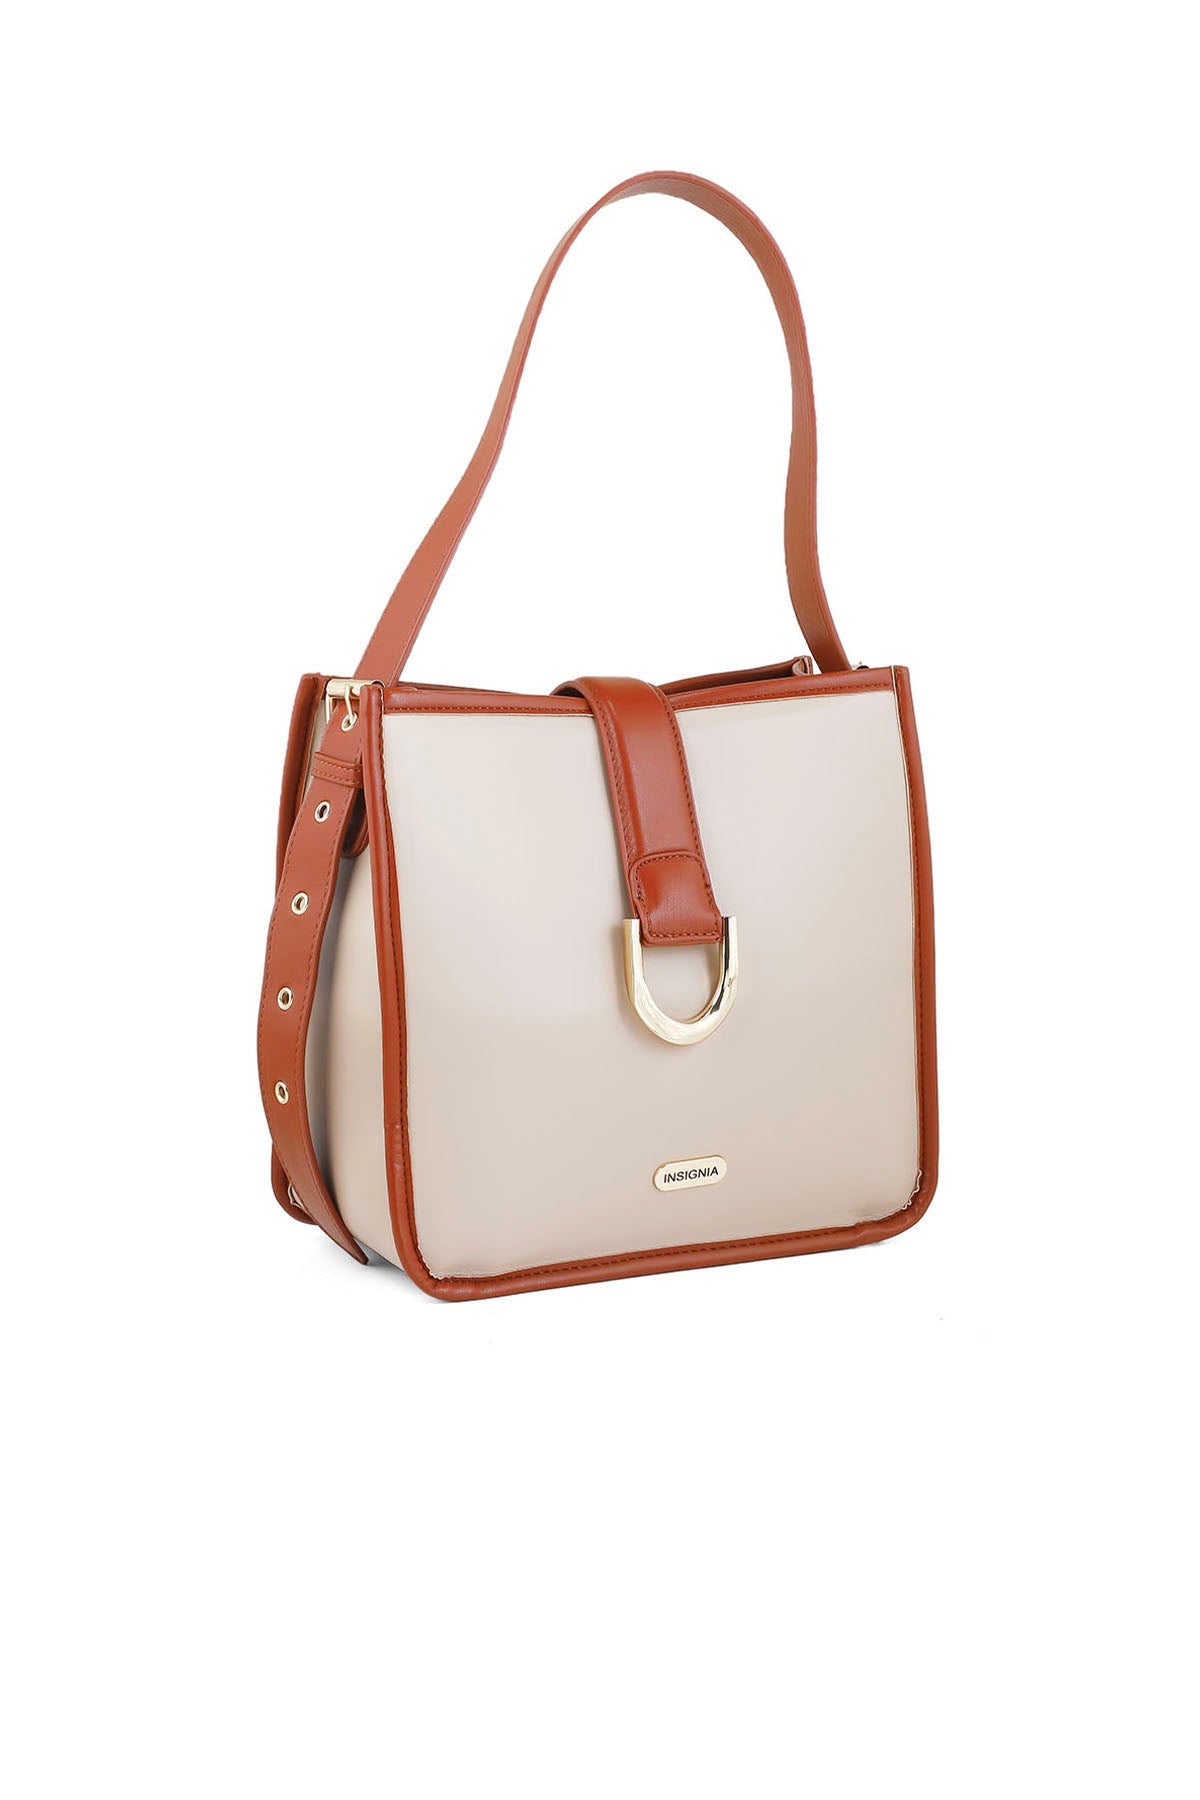 Baguette Shoulder Bags B15064-Fawn